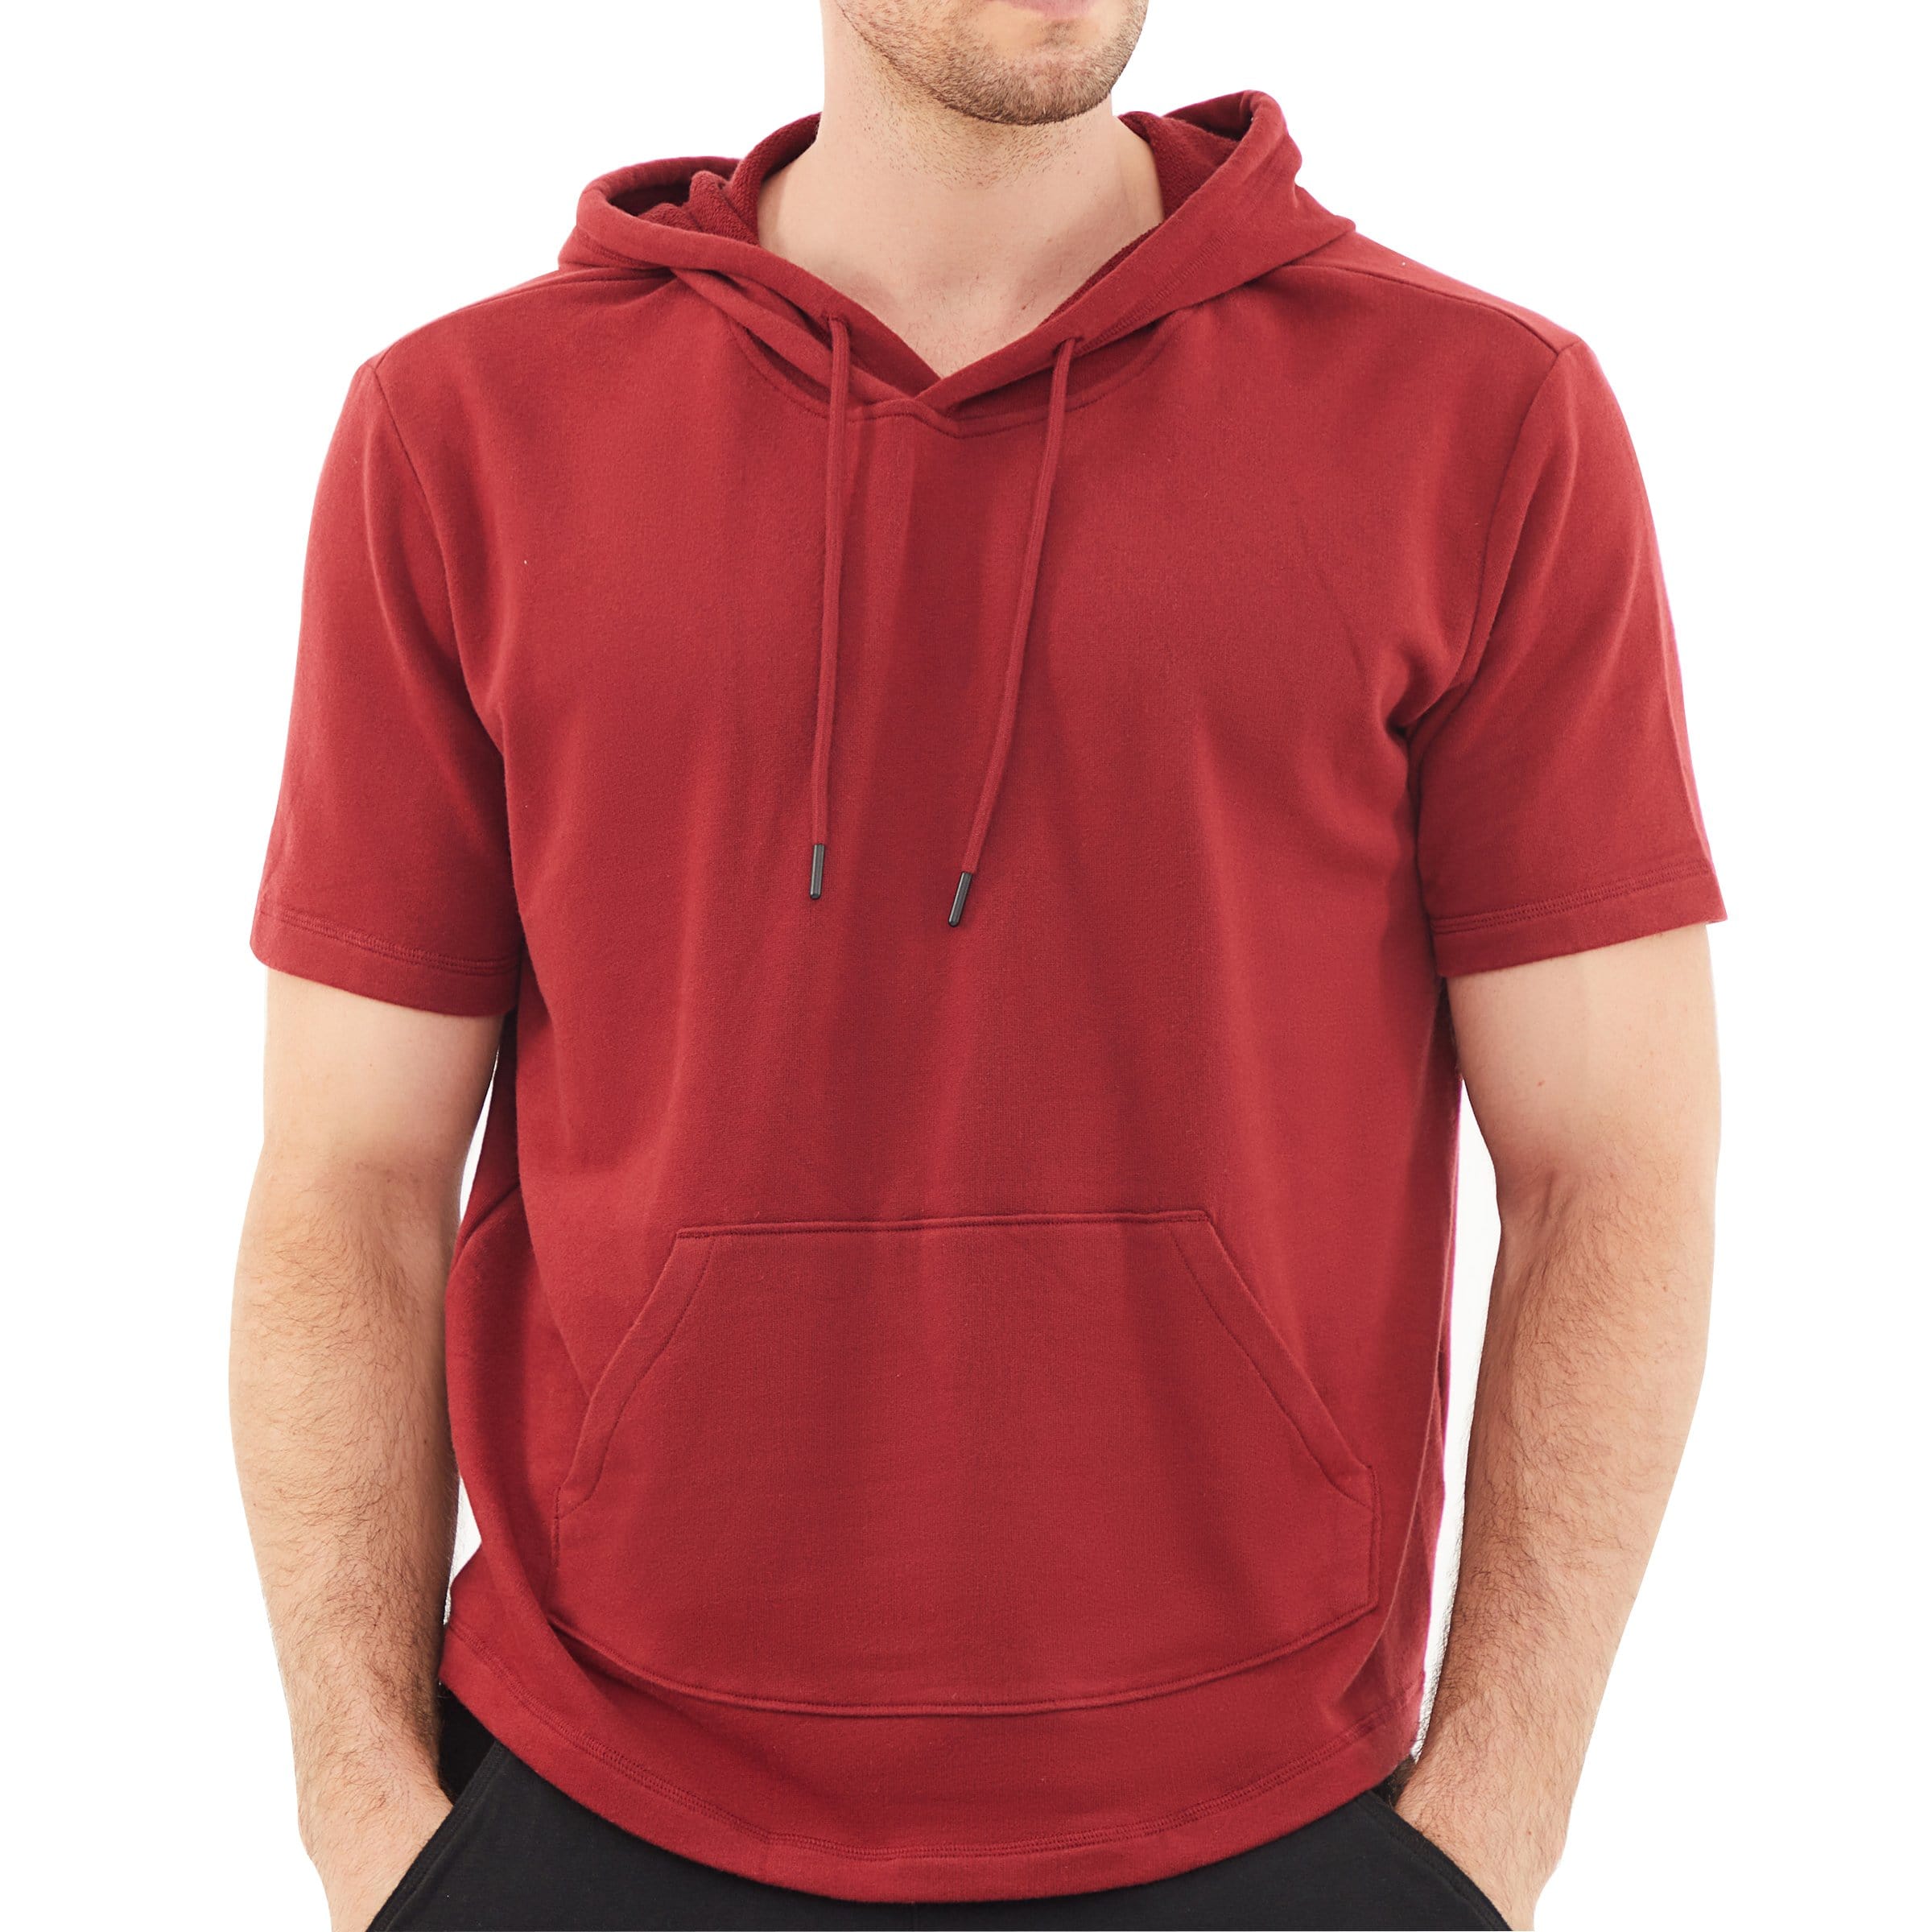 Men's Hoodies short-sleeved hooded sweatshirt #0603